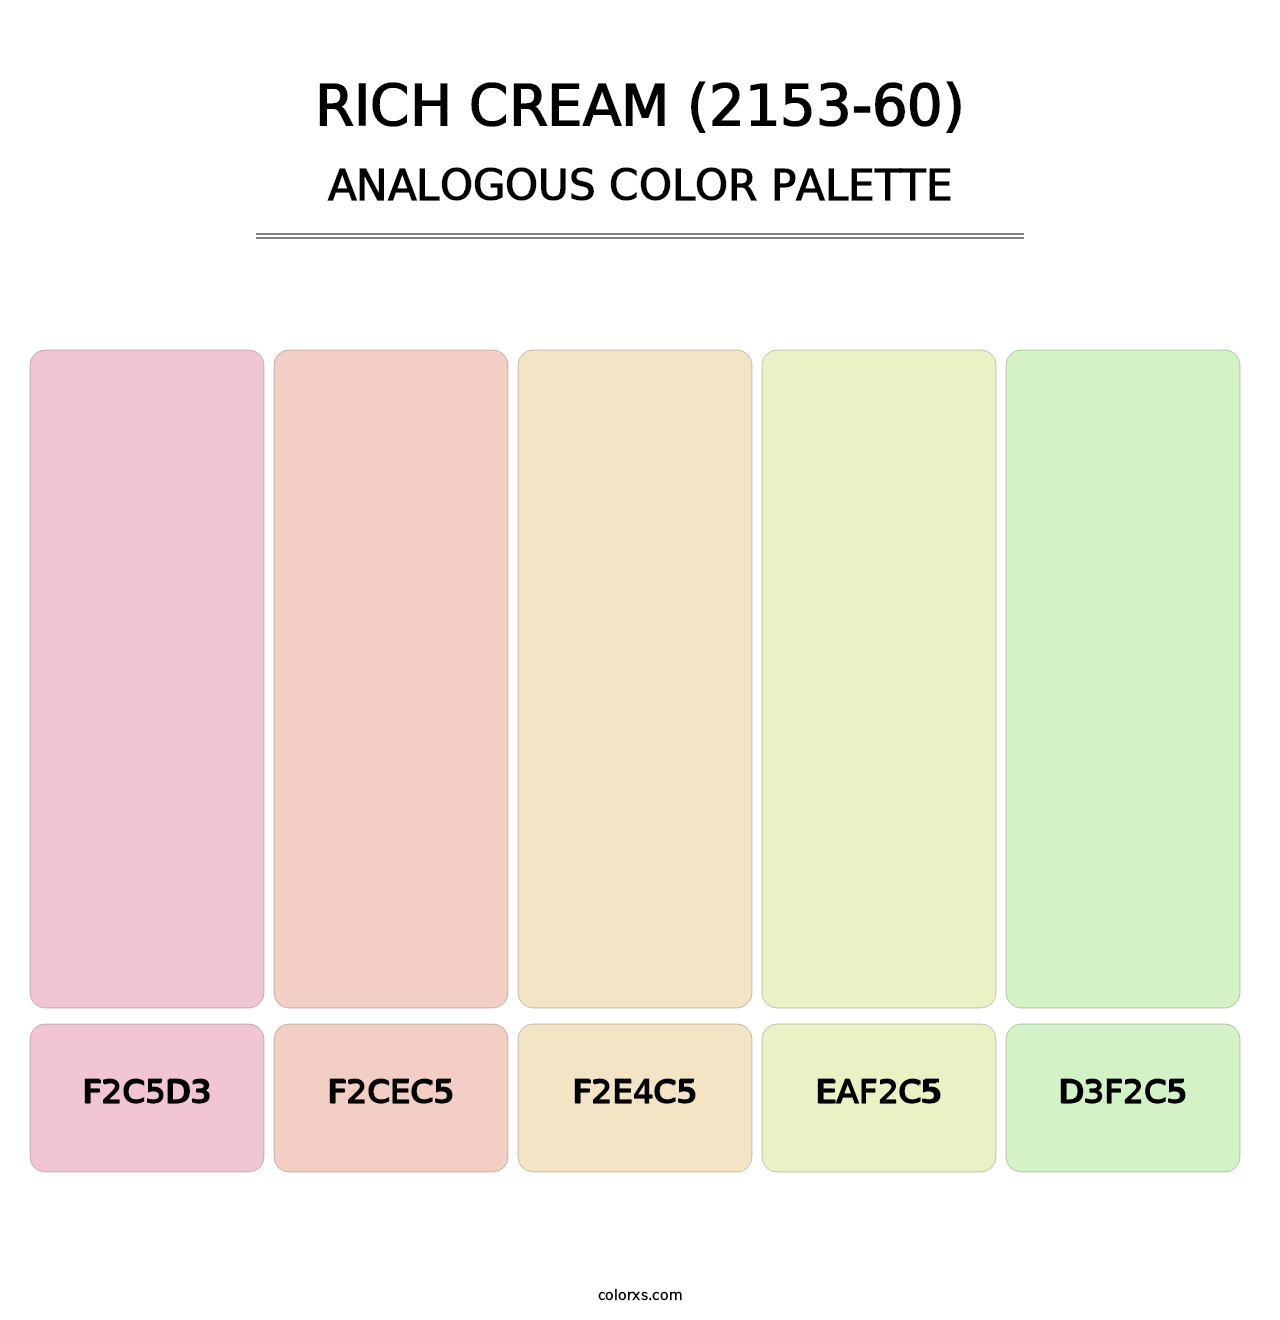 Rich Cream (2153-60) - Analogous Color Palette